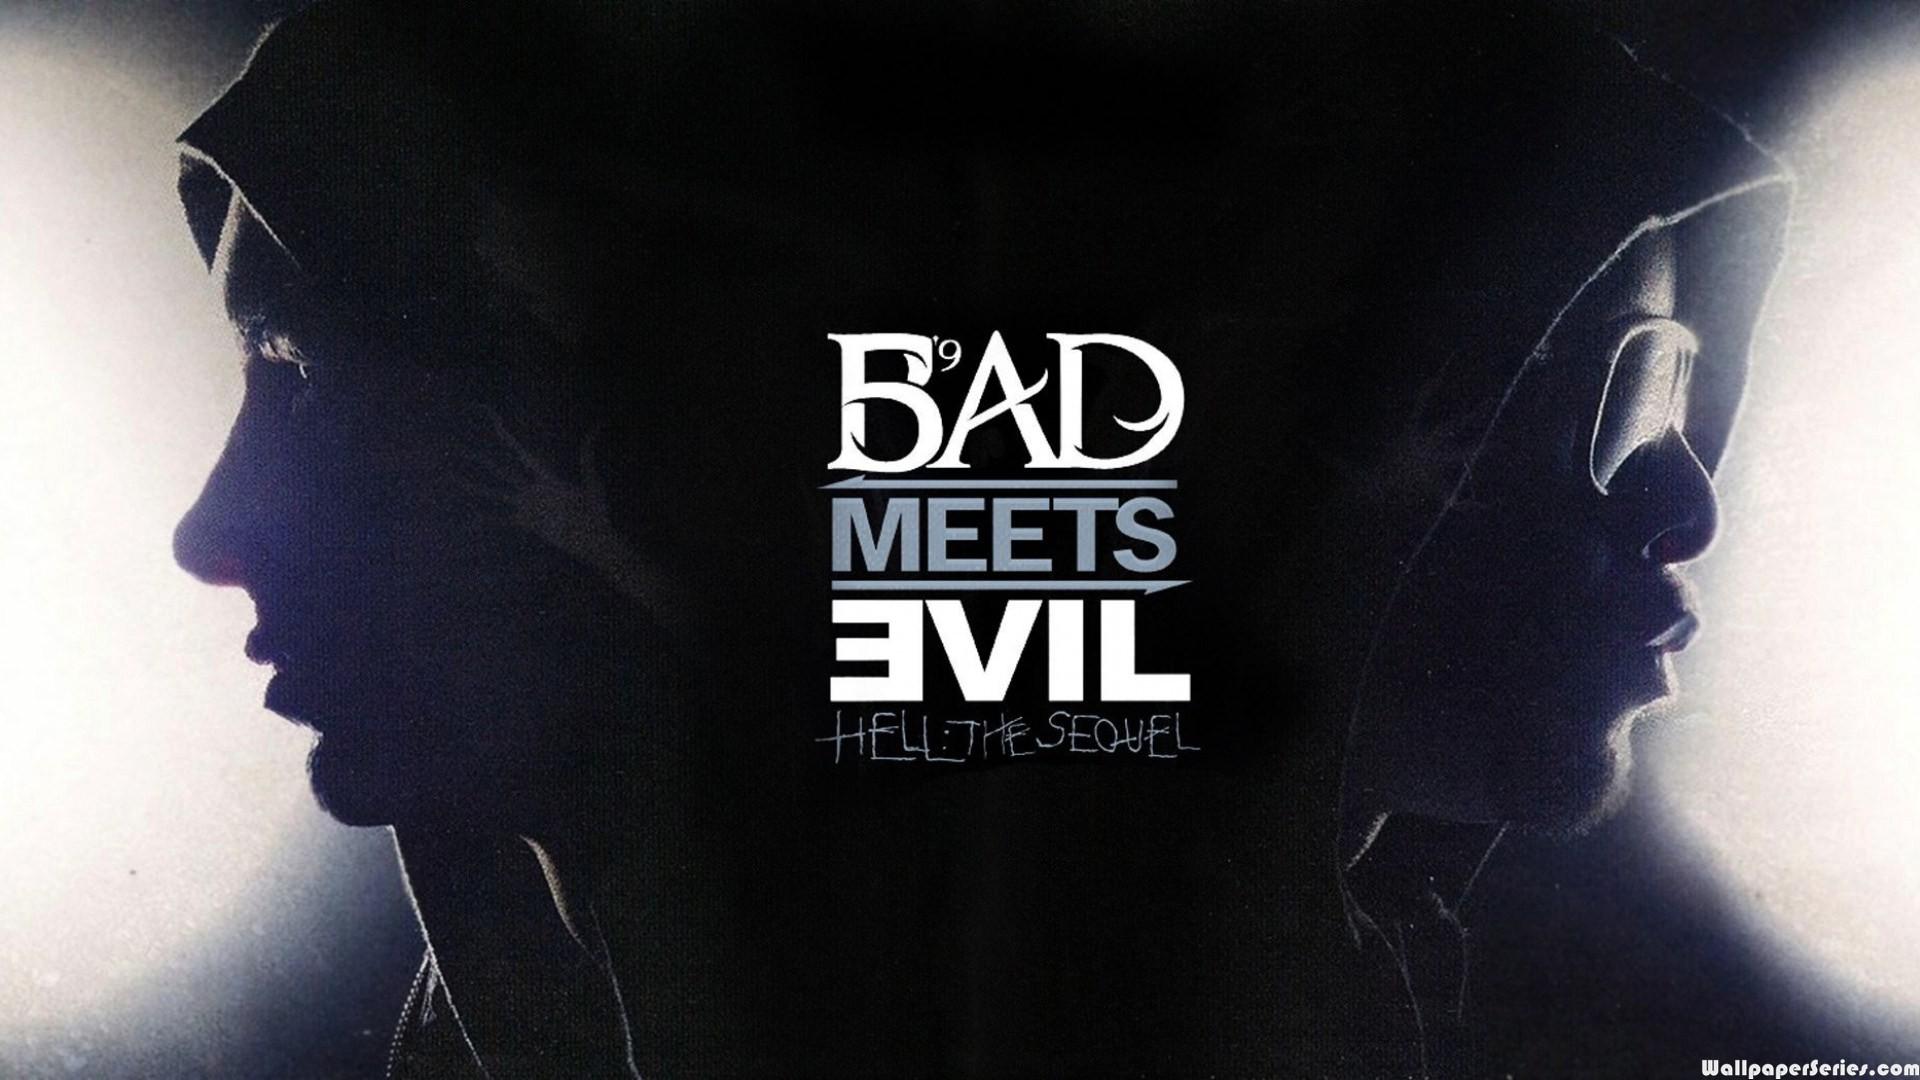 Hd Eminem Bad Meets Evil Hd Wallpaper - Bad Meets Evil Hell The Sequel Album - HD Wallpaper 